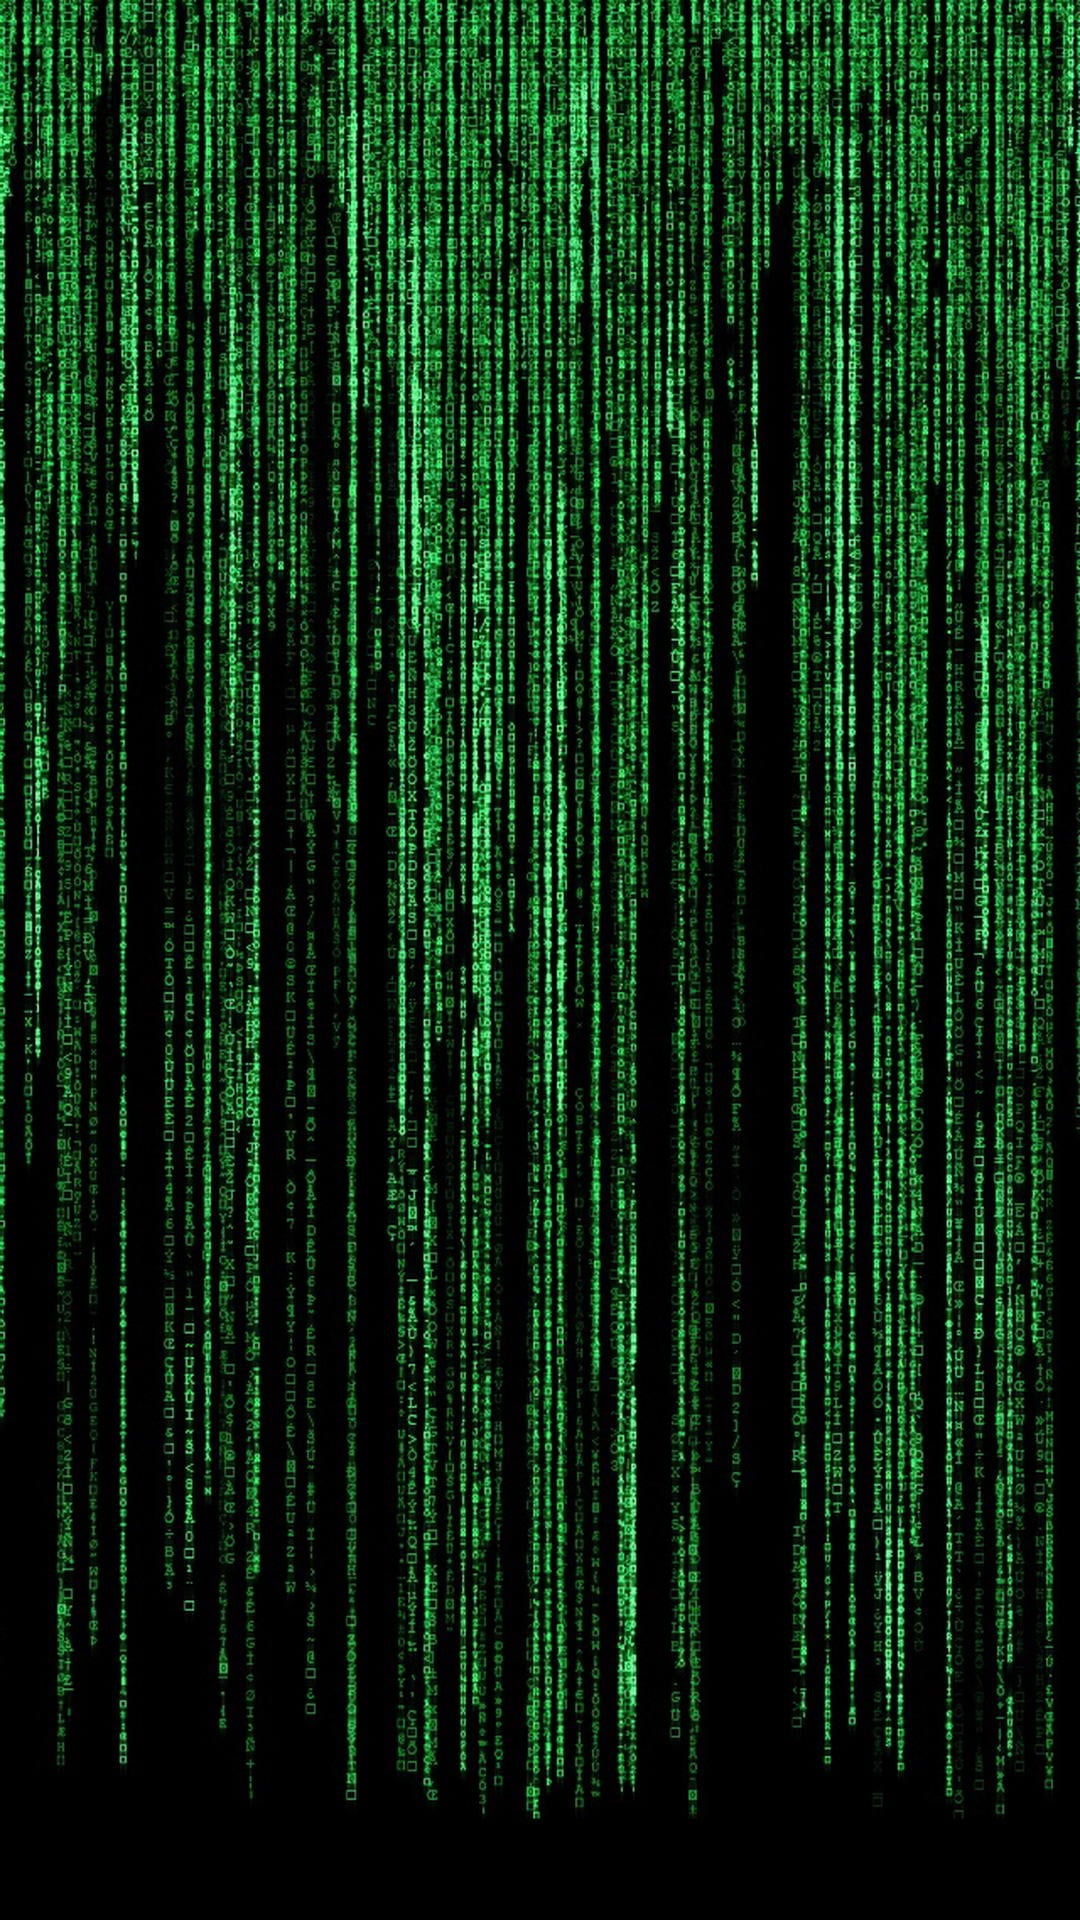 matrix code, The Matrix, movies, data, cyberspace, technology